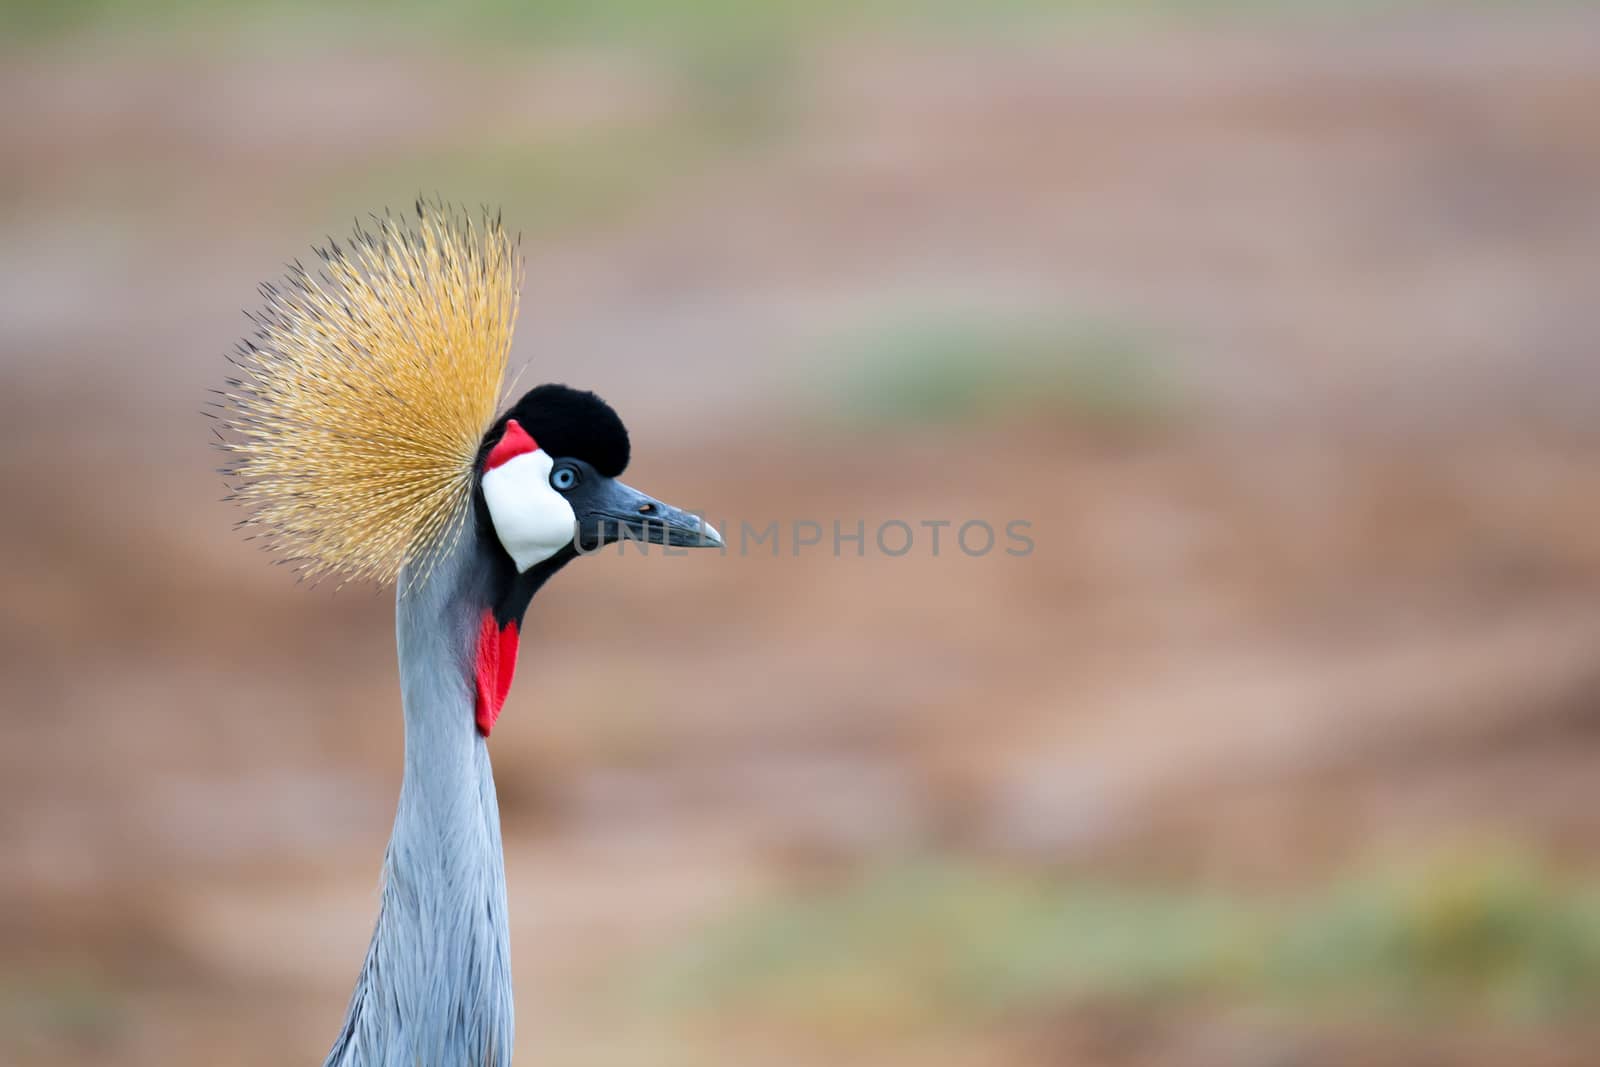 Colorful bird in the savannah of Kenya by 25ehaag6